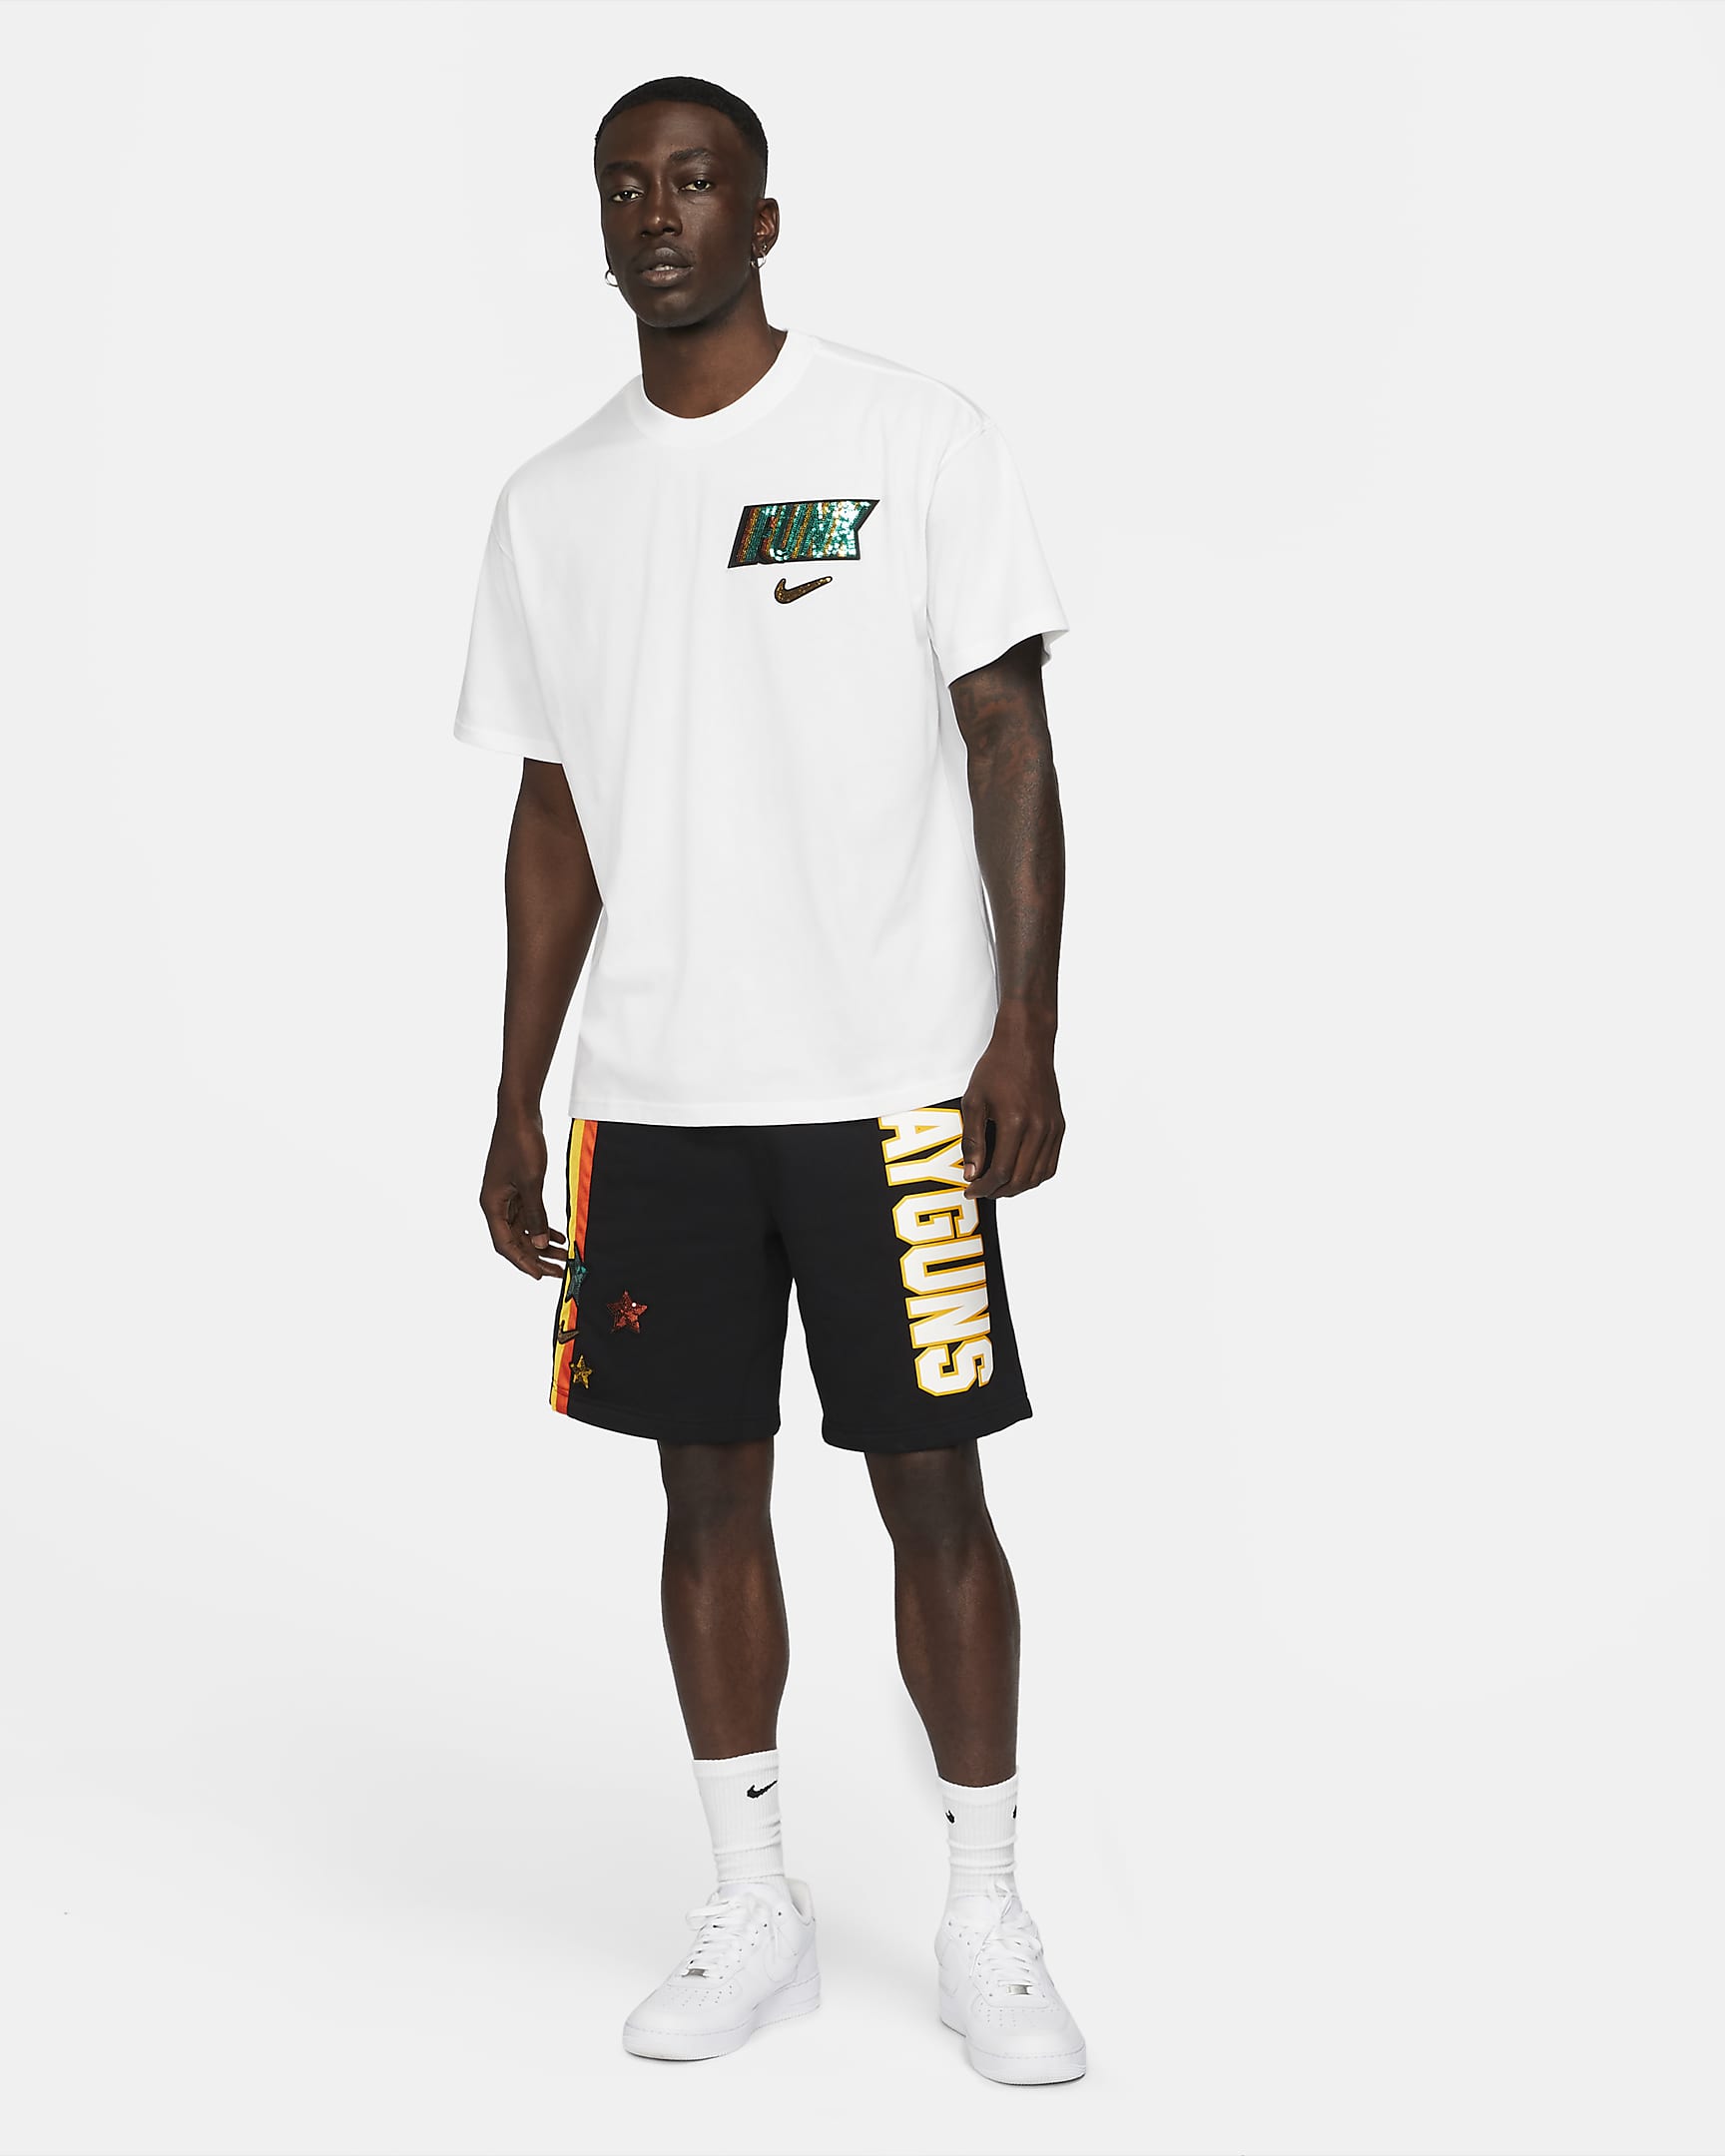 rayguns-mens-basketball-t-shirt-qZwq94-5